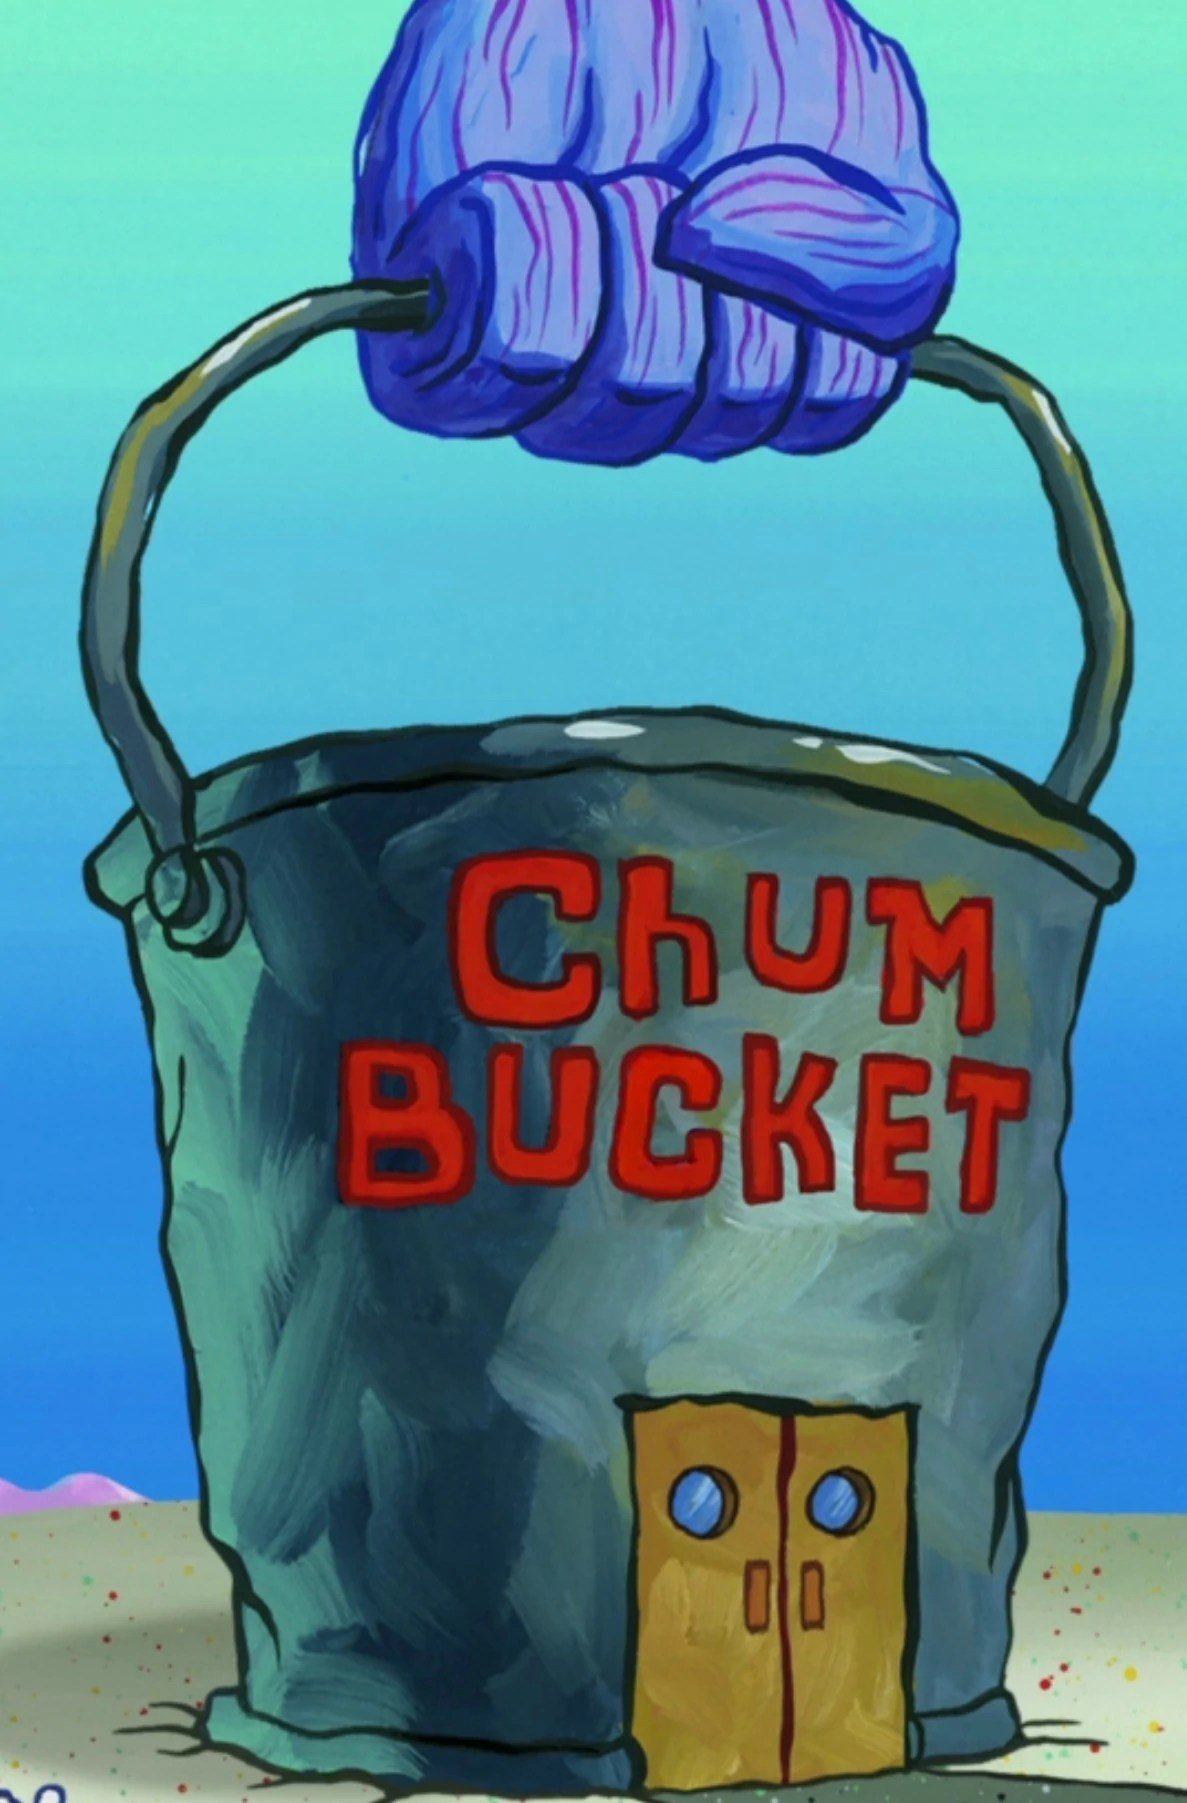 inside the chum bucket